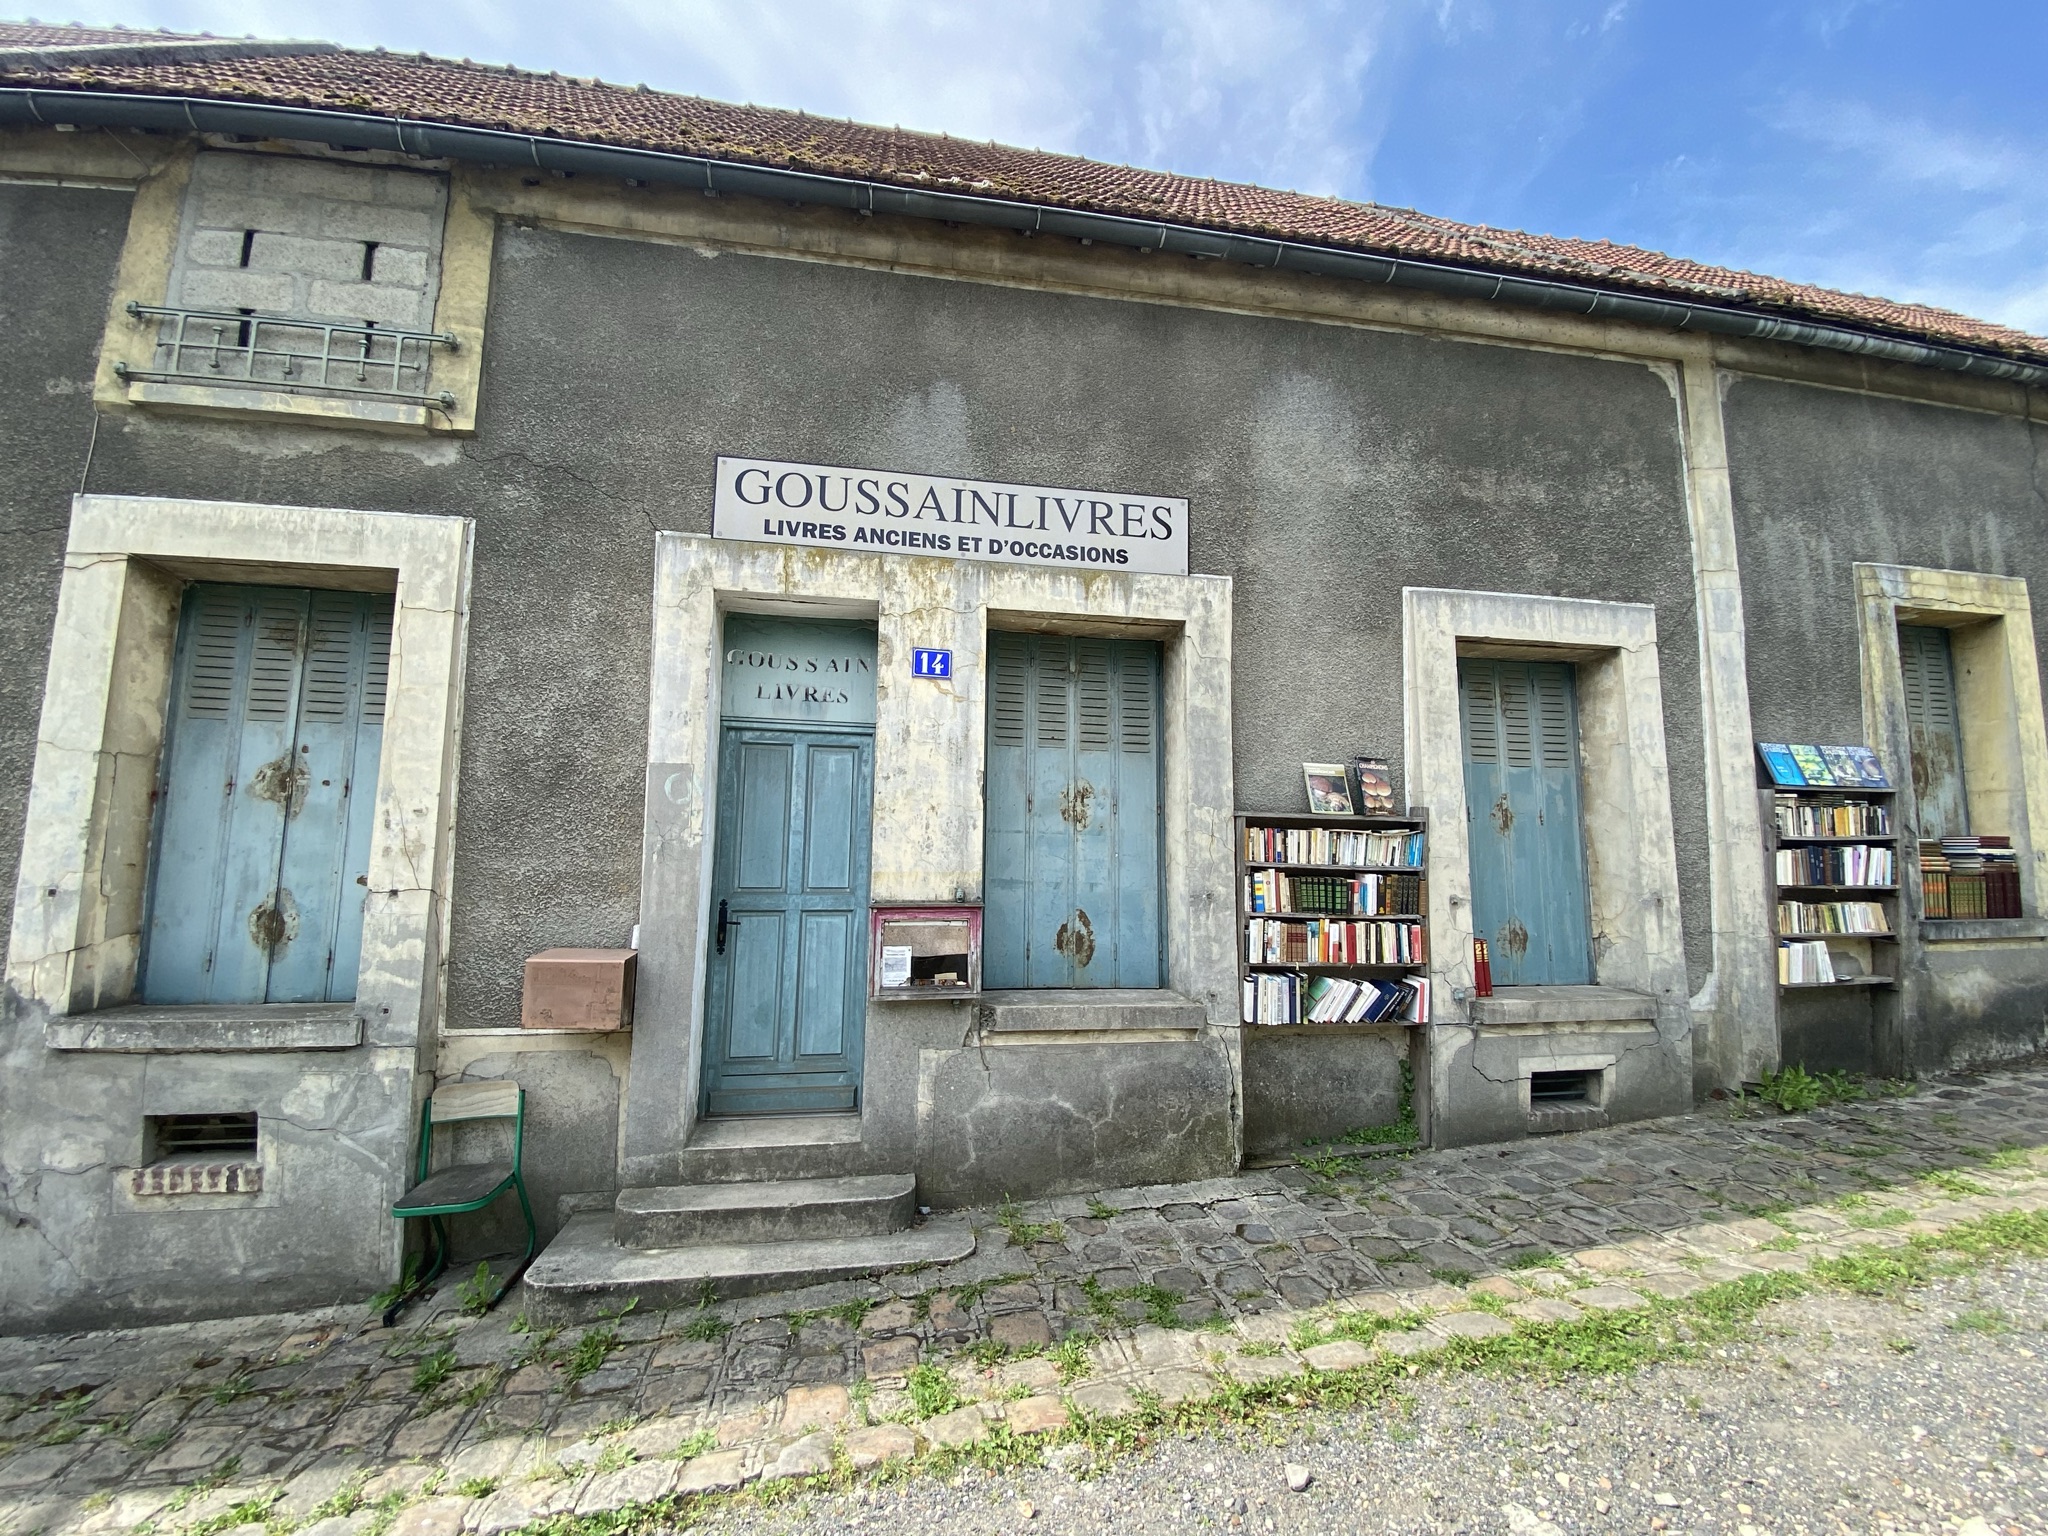 Een unieke bezoekervaring: het oude land in Goussainville